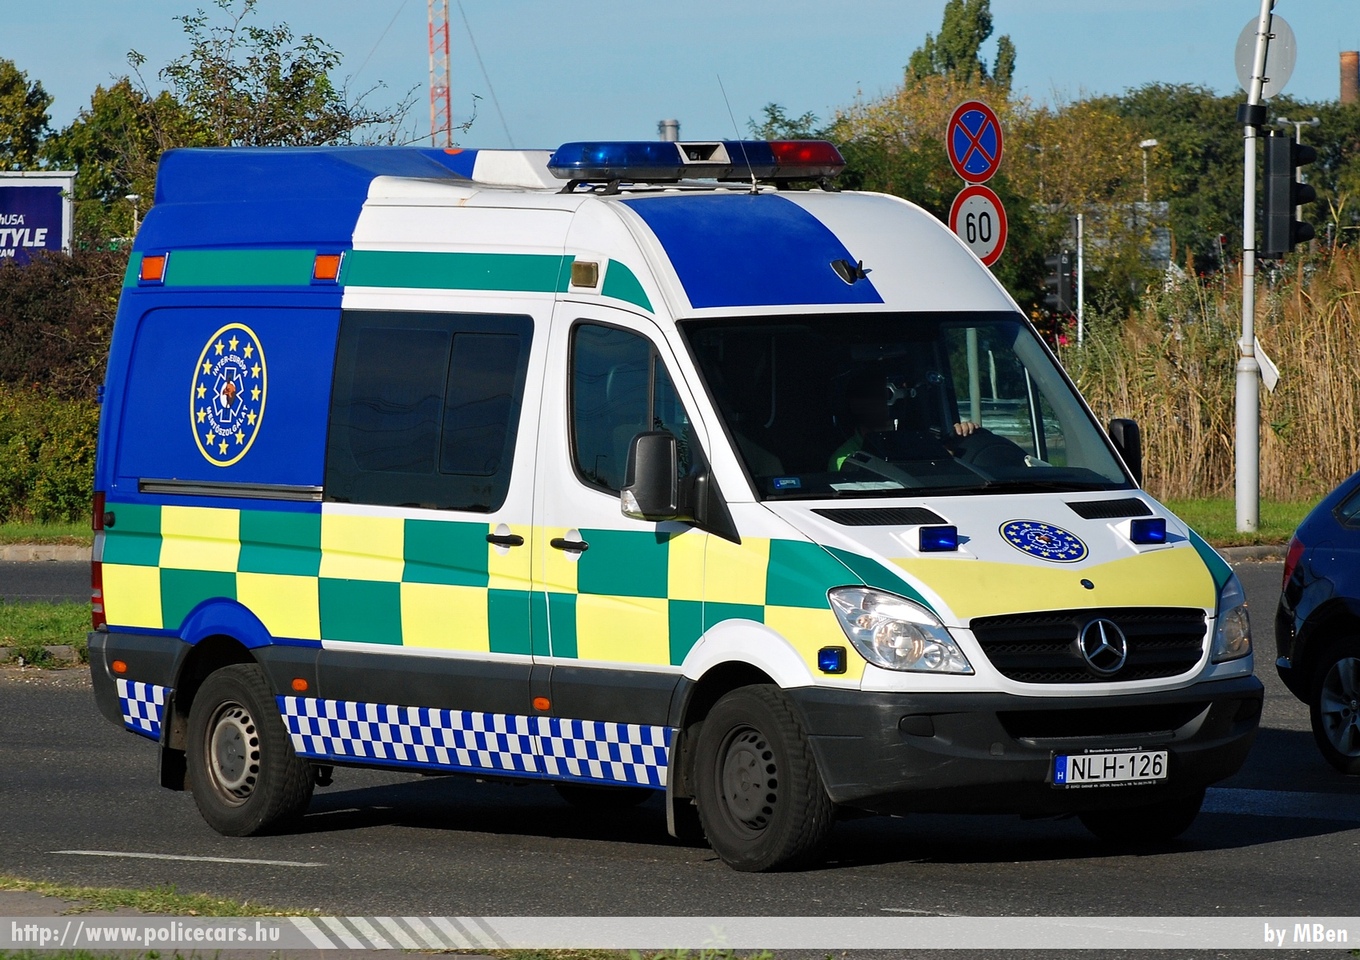 Mercedes-Benz Sprinter II, Inter-Európa Mentõszolgálat, fotó: MBen
Keywords: mentő mentőautó magyar Magyarország hungarian Hungary ambulance NLH-126